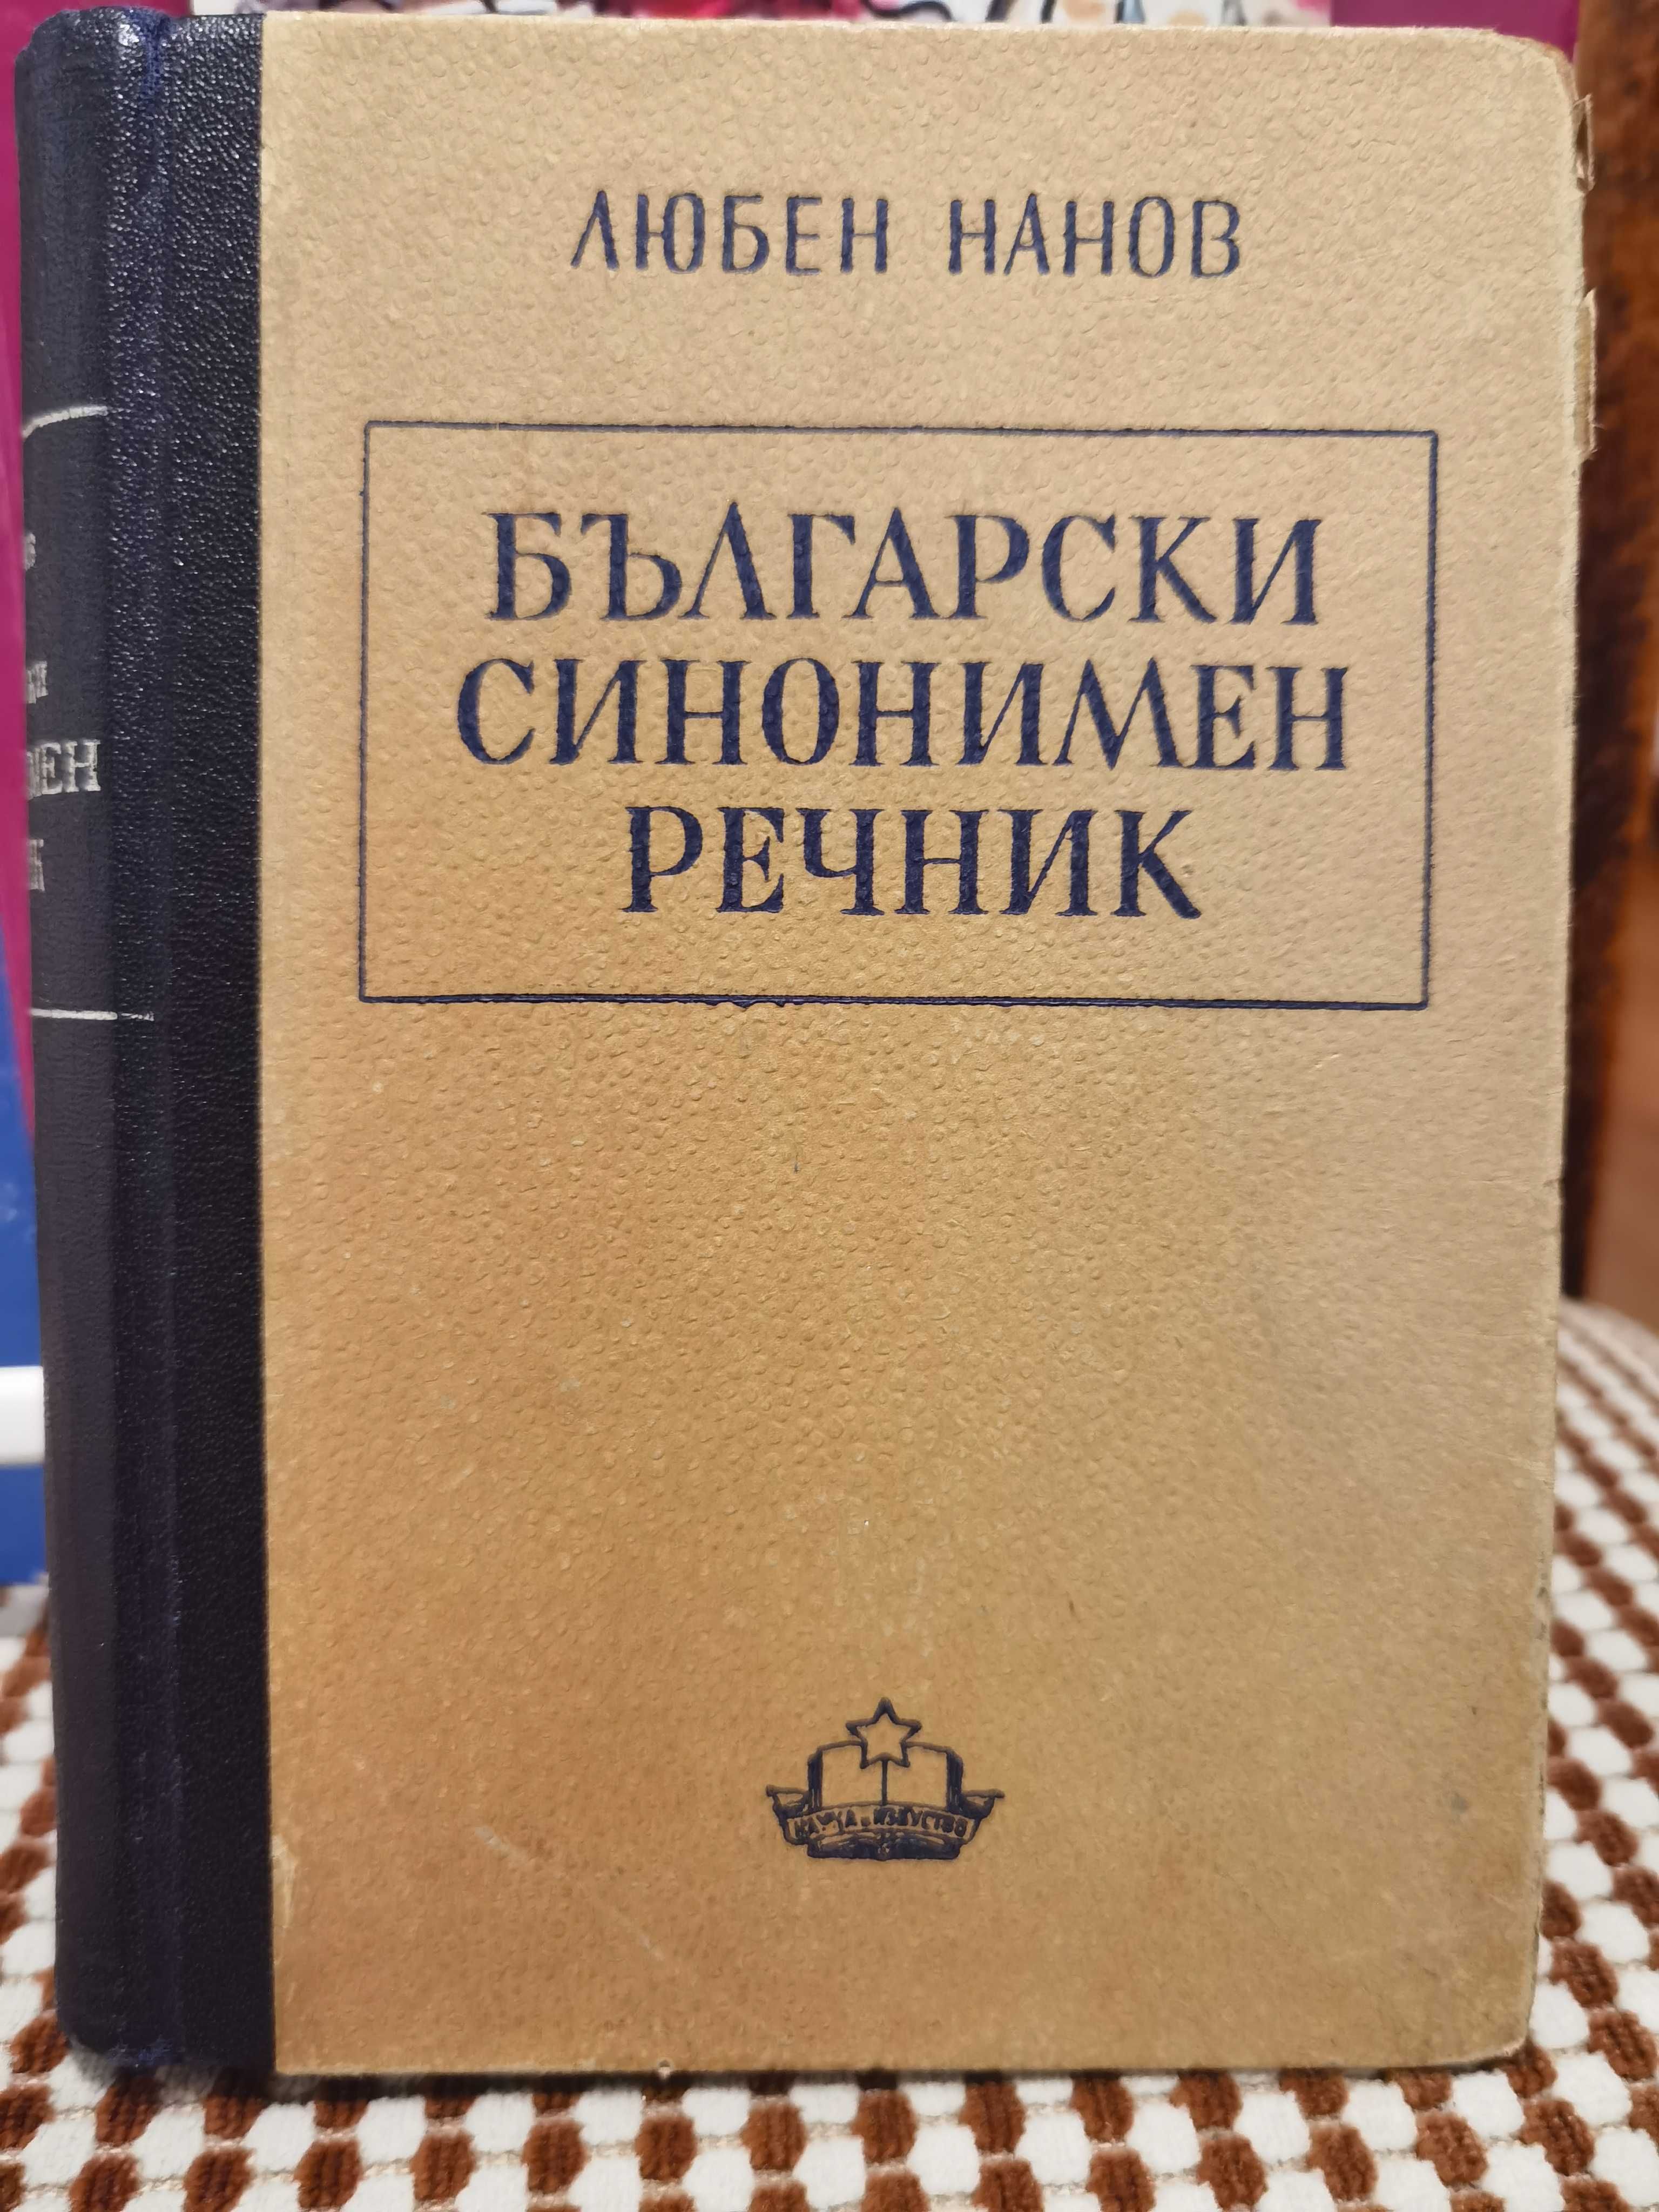 Антикварна Книга Български синонимен речник от Любен Нанов 1950 г.